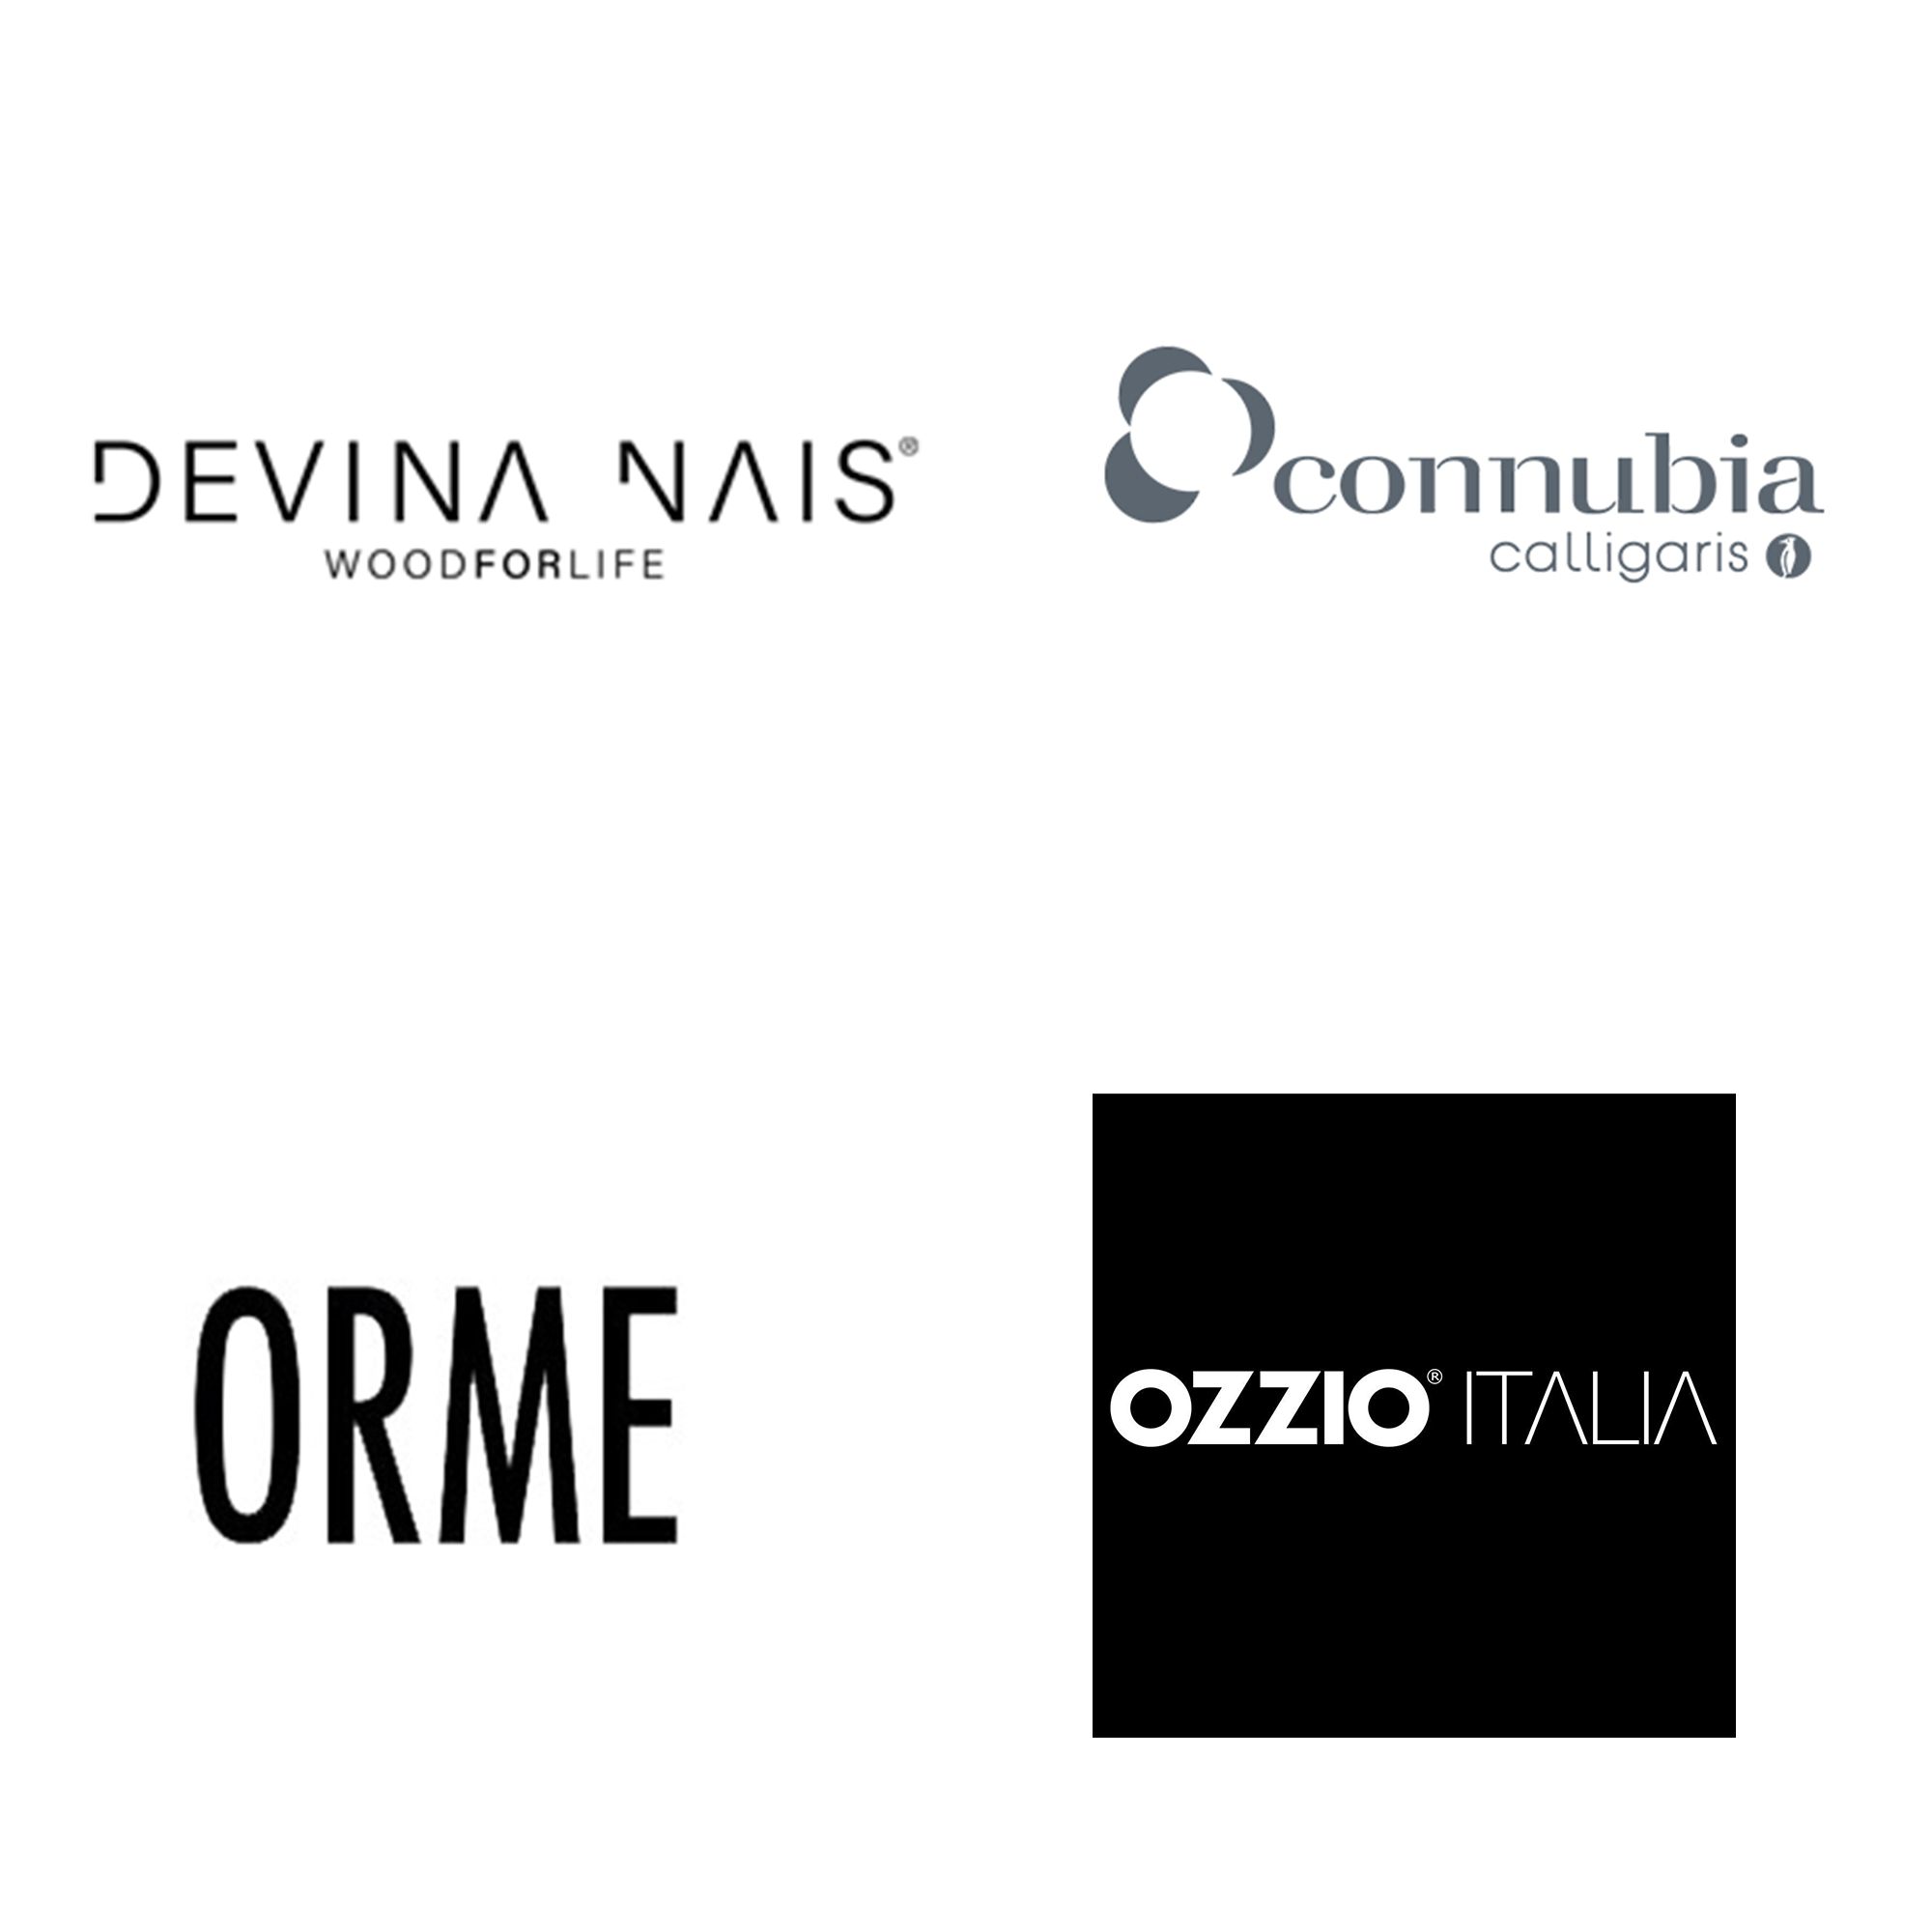 Devina Nais, Connubia Calligaris, Orme, Ozzio Italia, Ozzio EasyLine Arredamento per tutti gli spazi e per tutti budget Marinelli Design Group